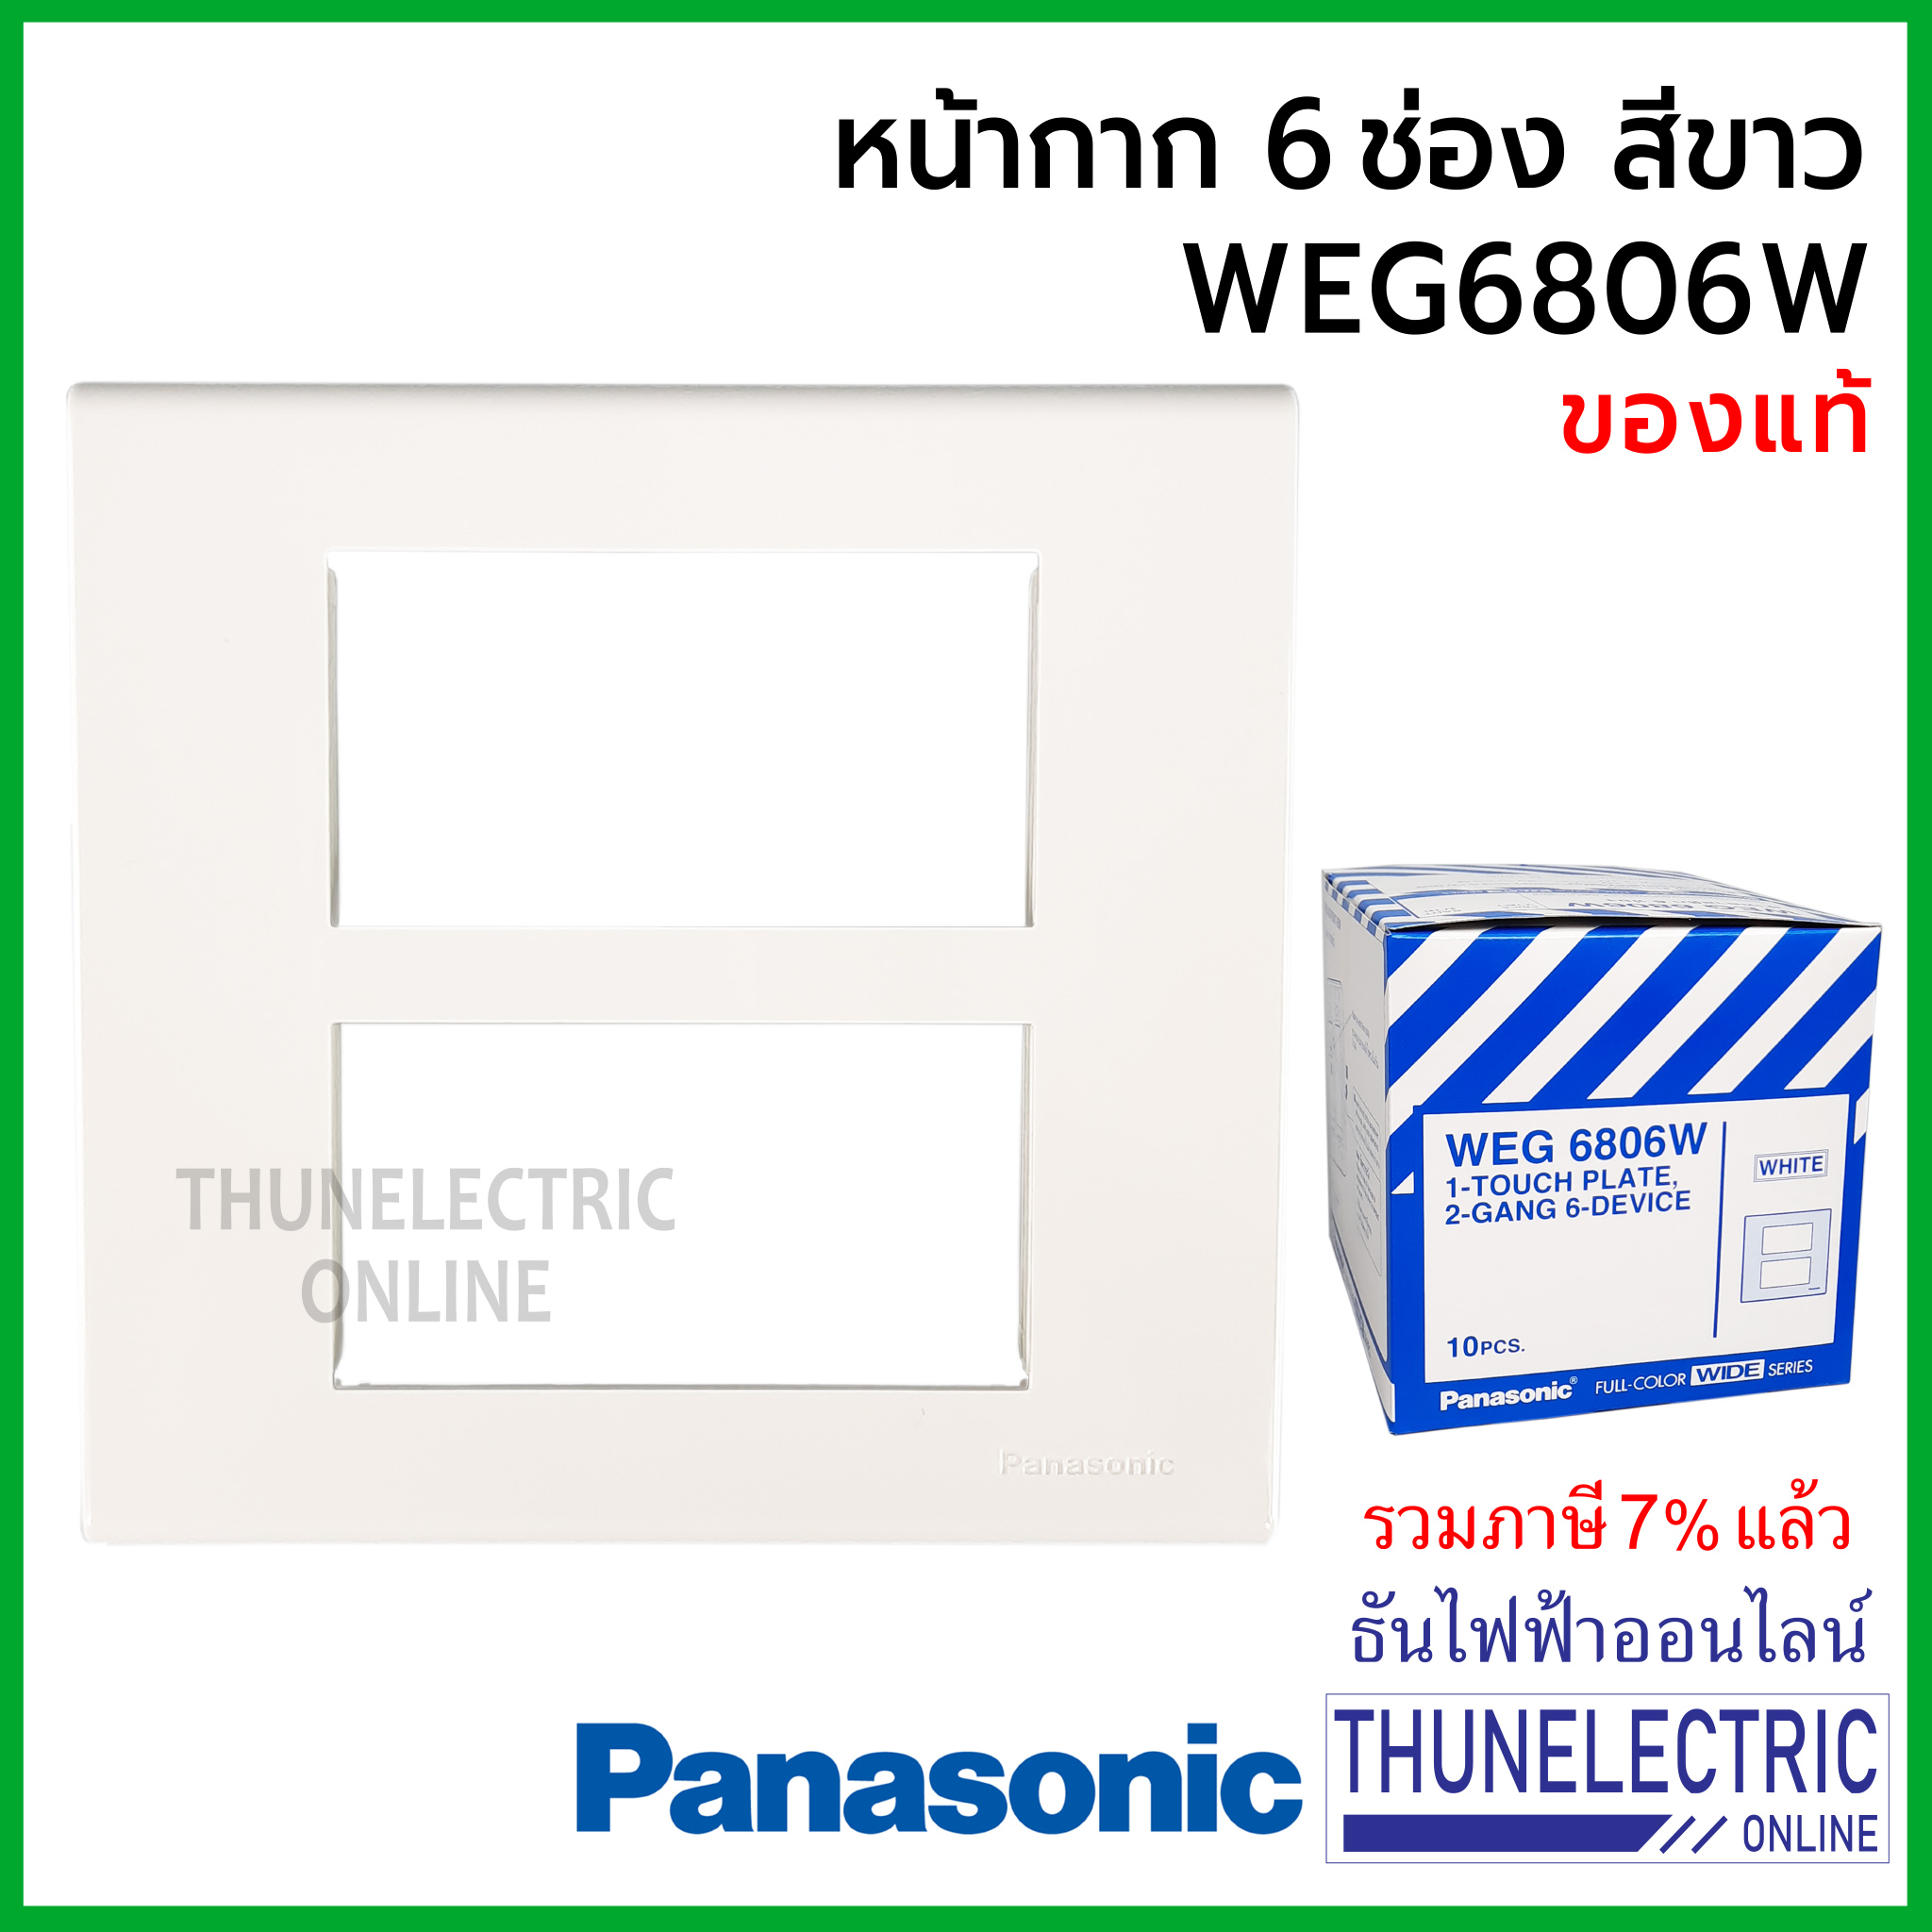 Panasonic หน้ากาก 6 ช่อง สีขาว WEG6806W ฝาพลาสติก รุ่น wide series พานาโซนิค (1ชิ้น) ธันไฟฟ้า